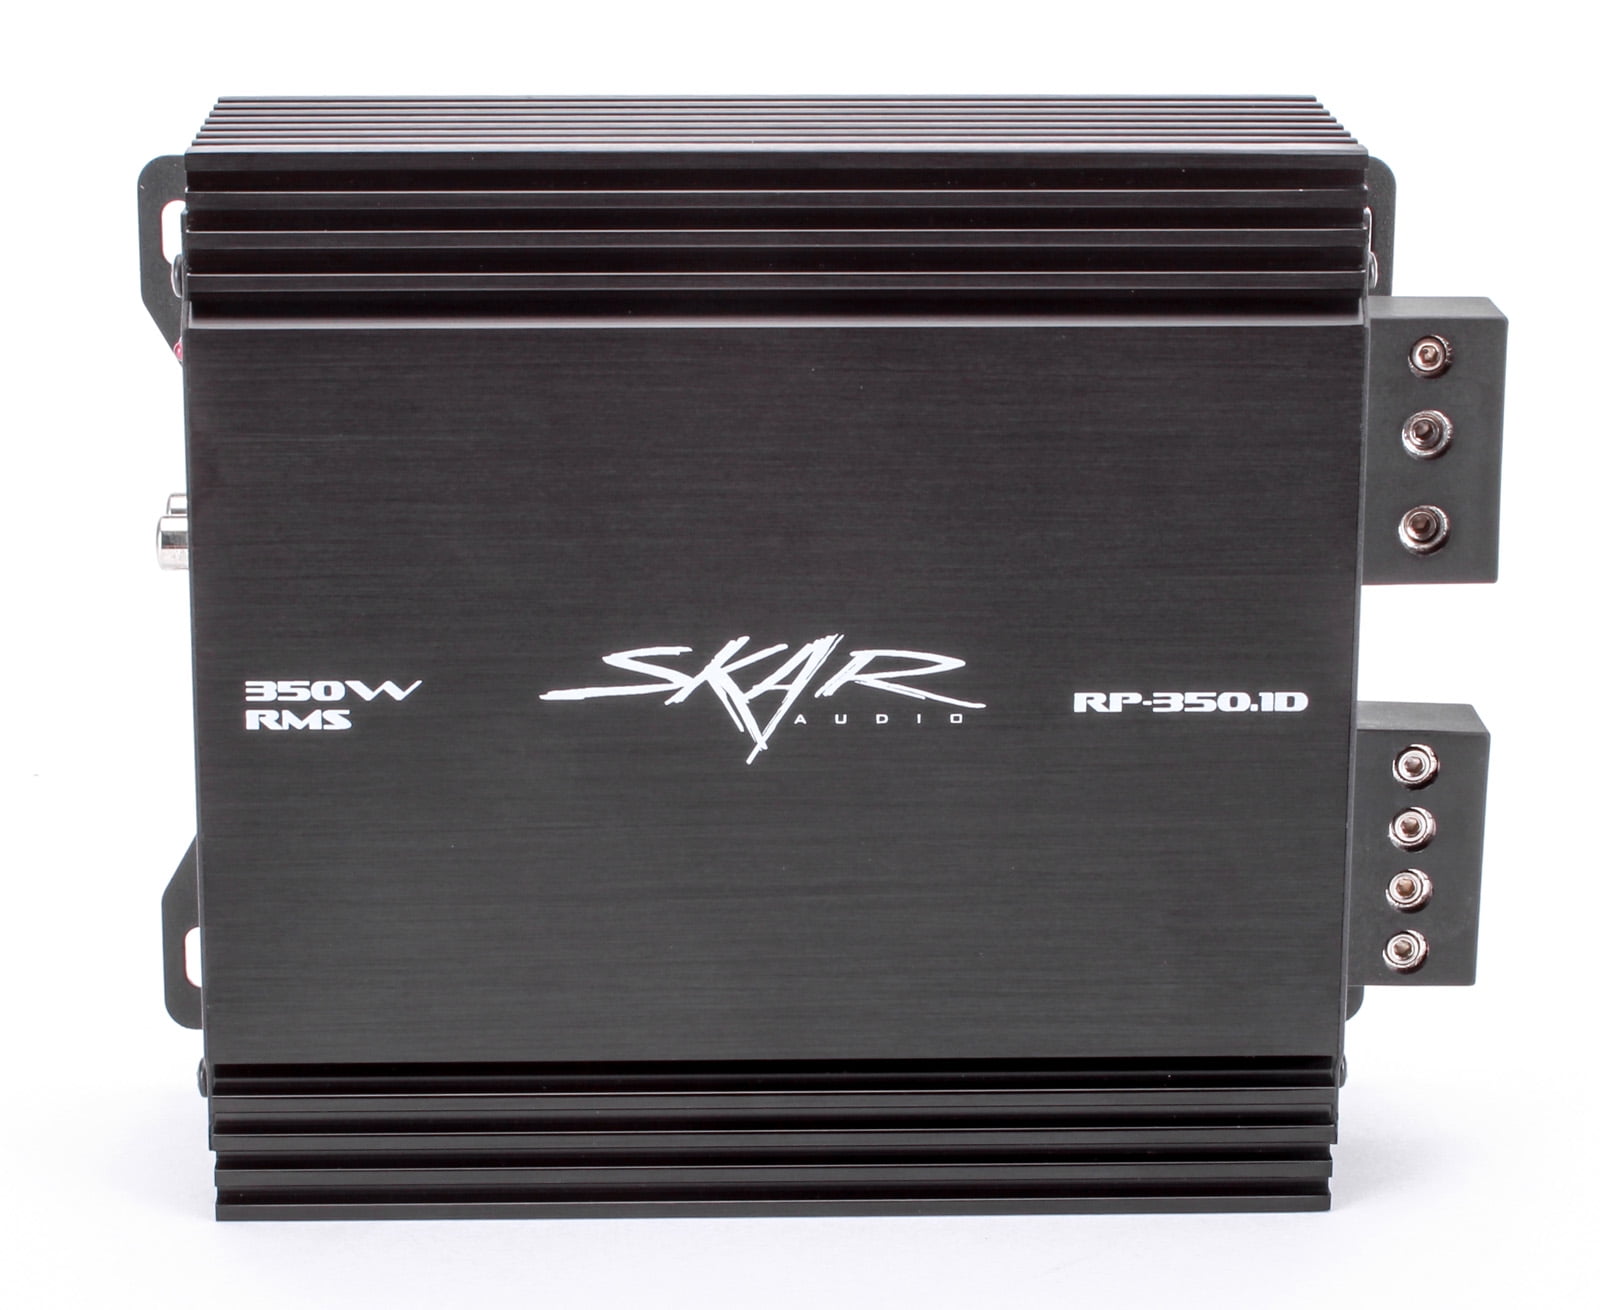 Skar Audio RP-350.1D Monoblock 350-Watt Class D MOSFET Subwoofer Amplifier 